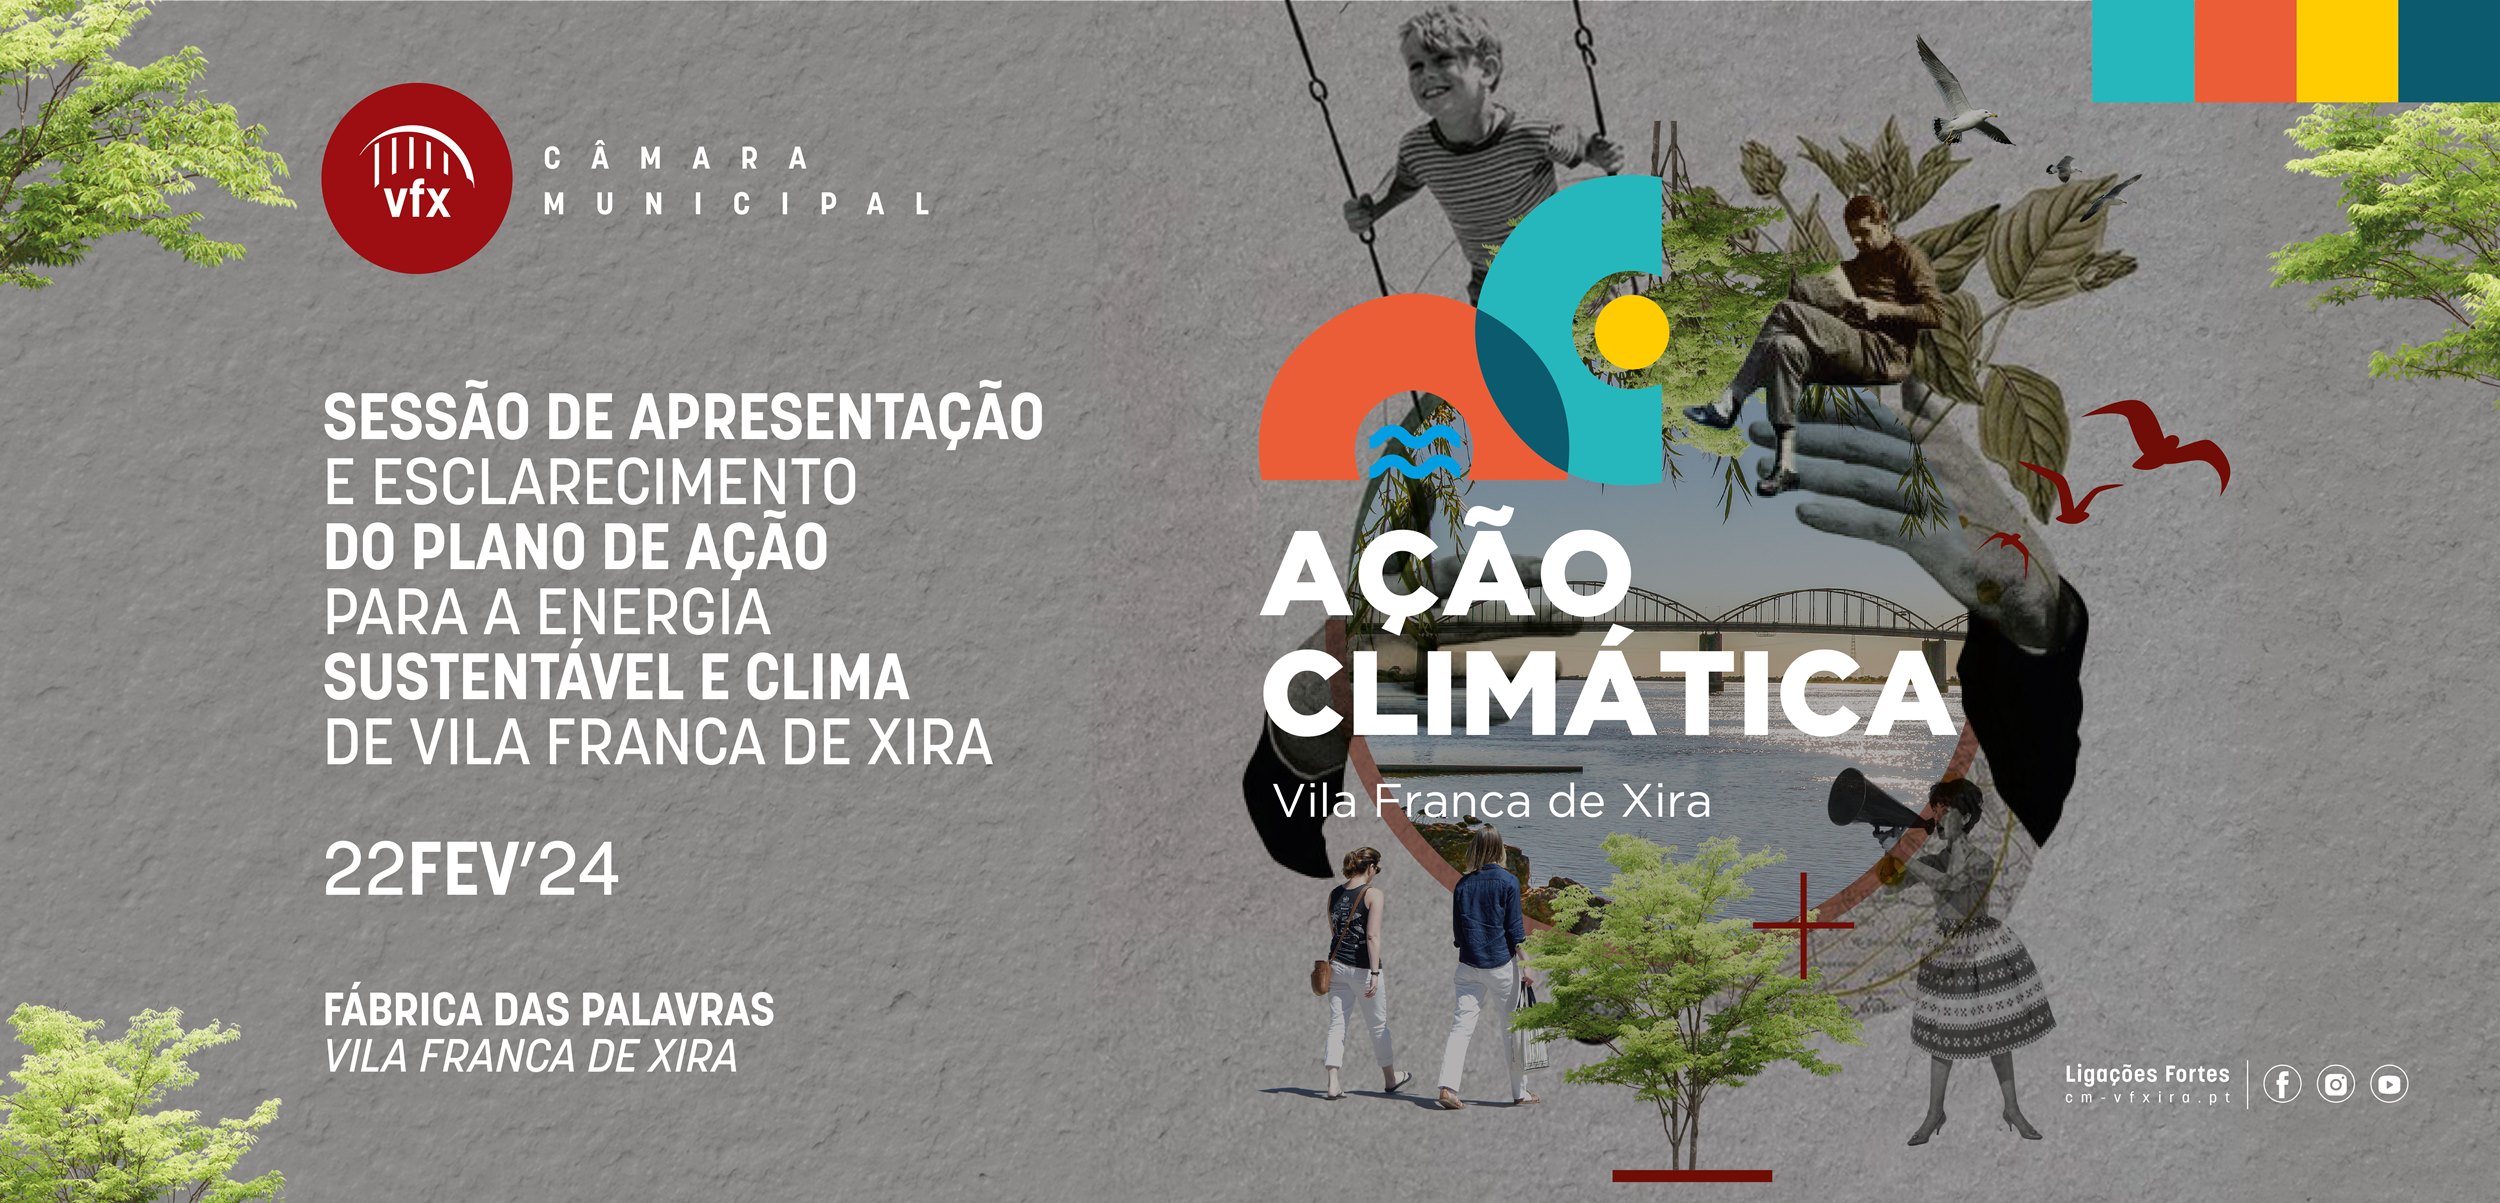 Apresentação pública do Plano de Ação para a Energia Sustentável e Clima de Vila Franca de Xira